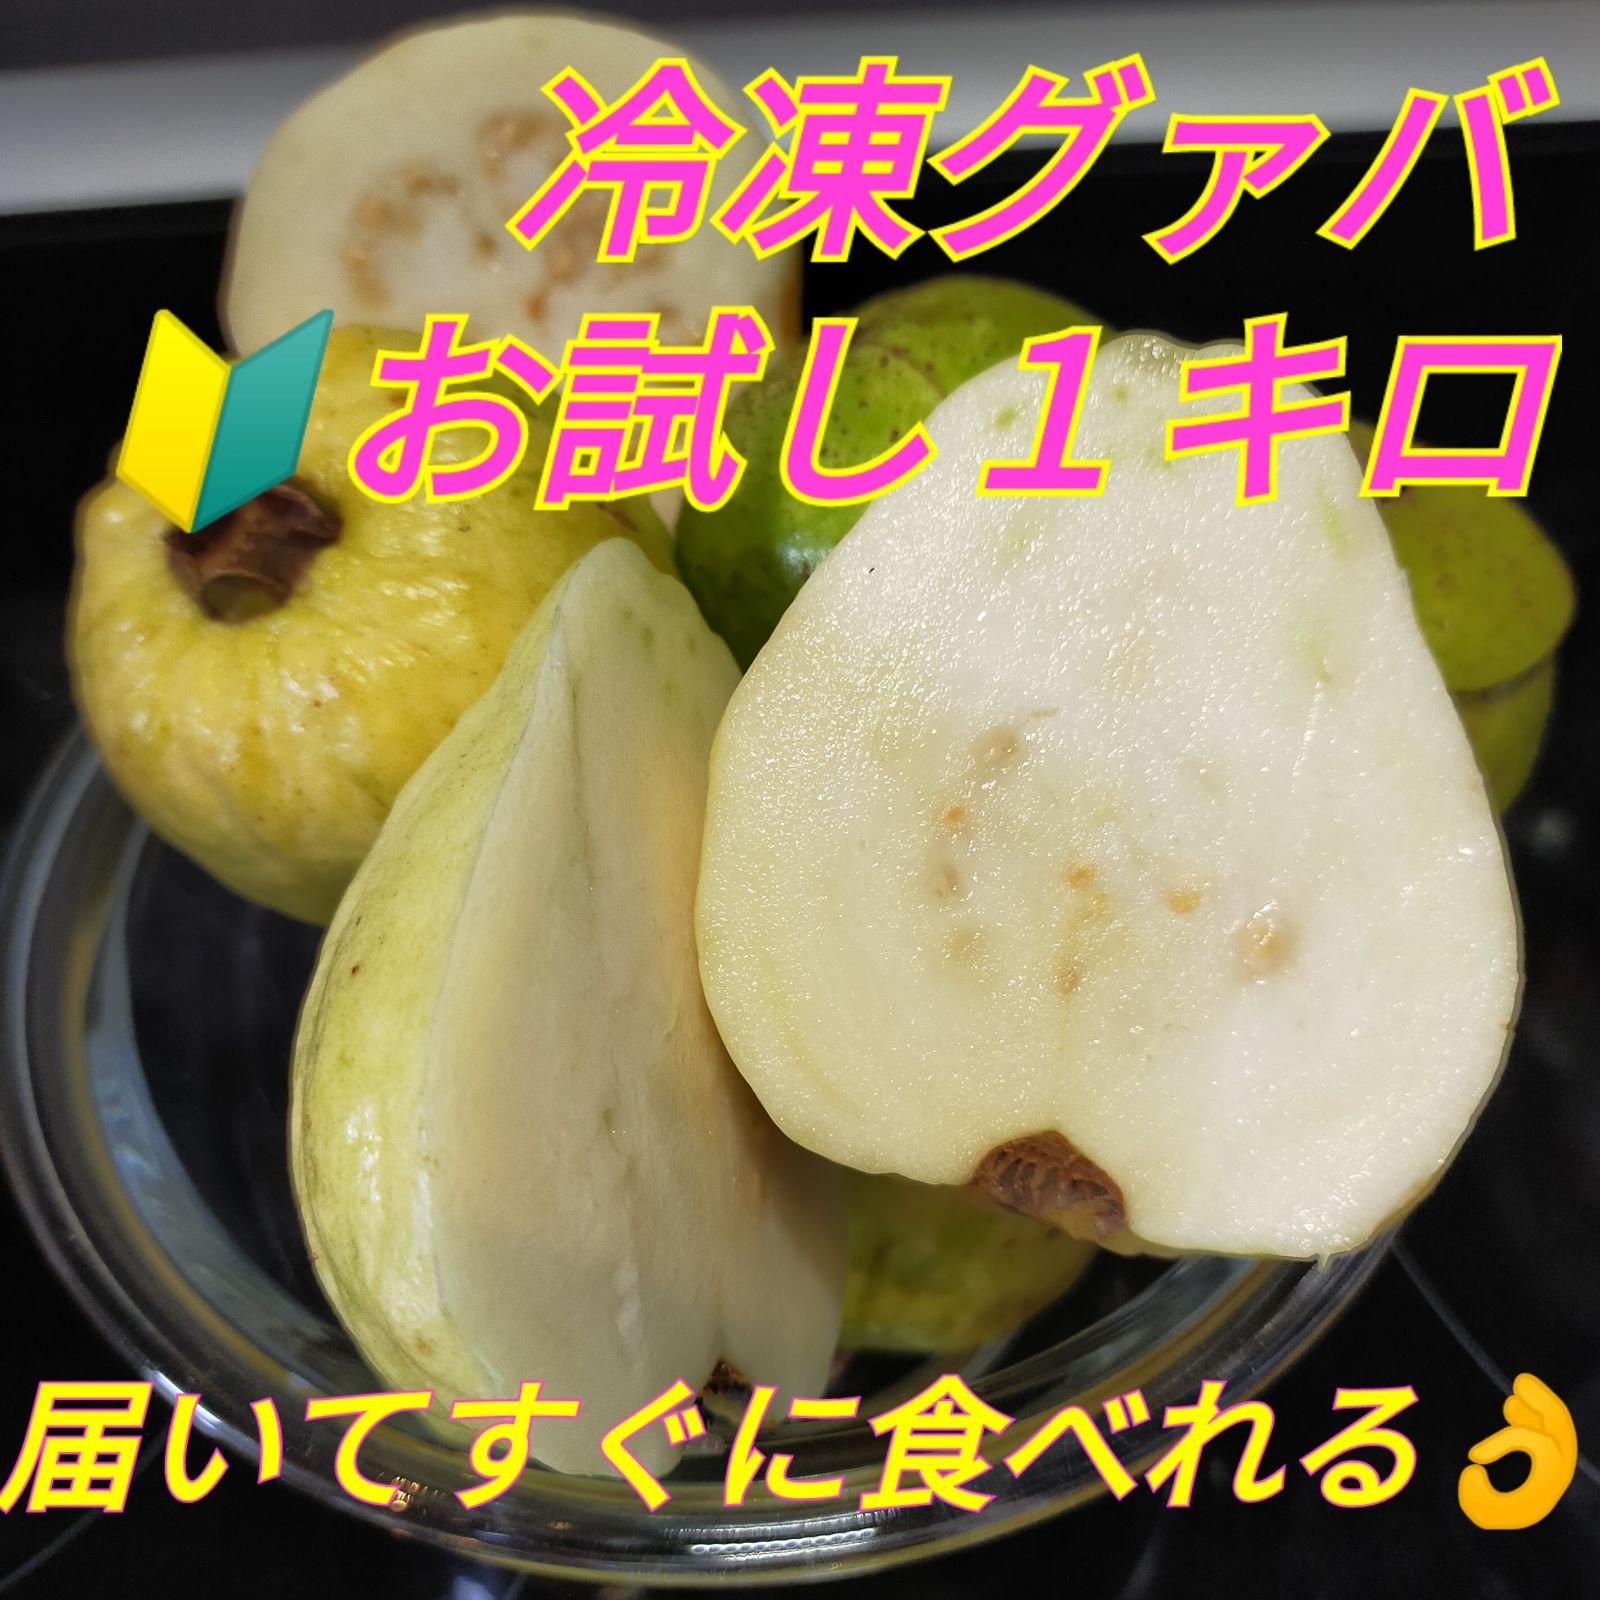 奄美産冷凍グァバ MIX 1キロ - メルカリ